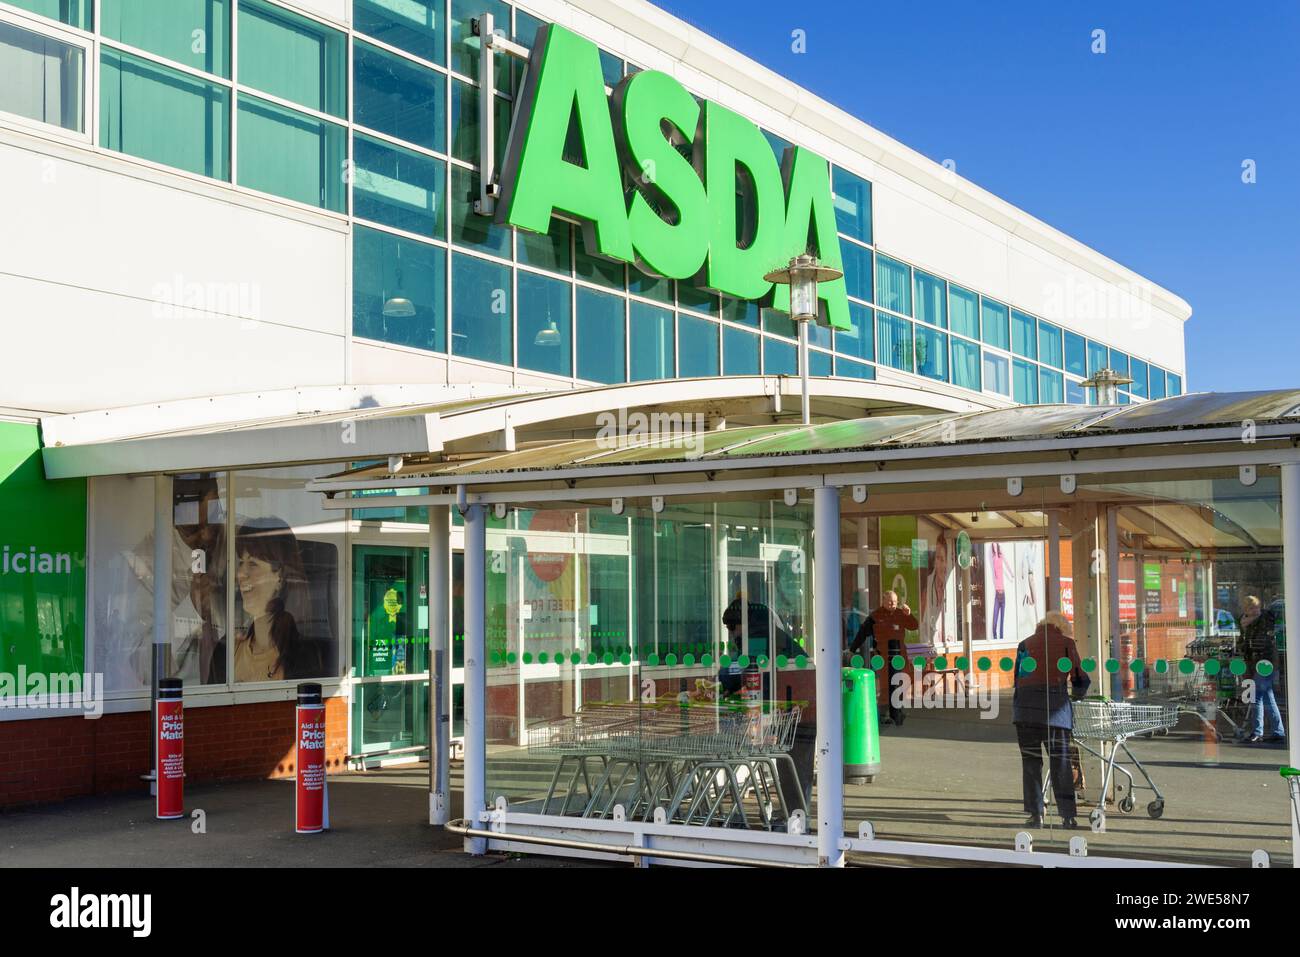 Negozio Asda ingresso negozio Asda insegna logo Asda uk Asda supermercato Derbyshire inghilterra regno unito gb europa Foto Stock